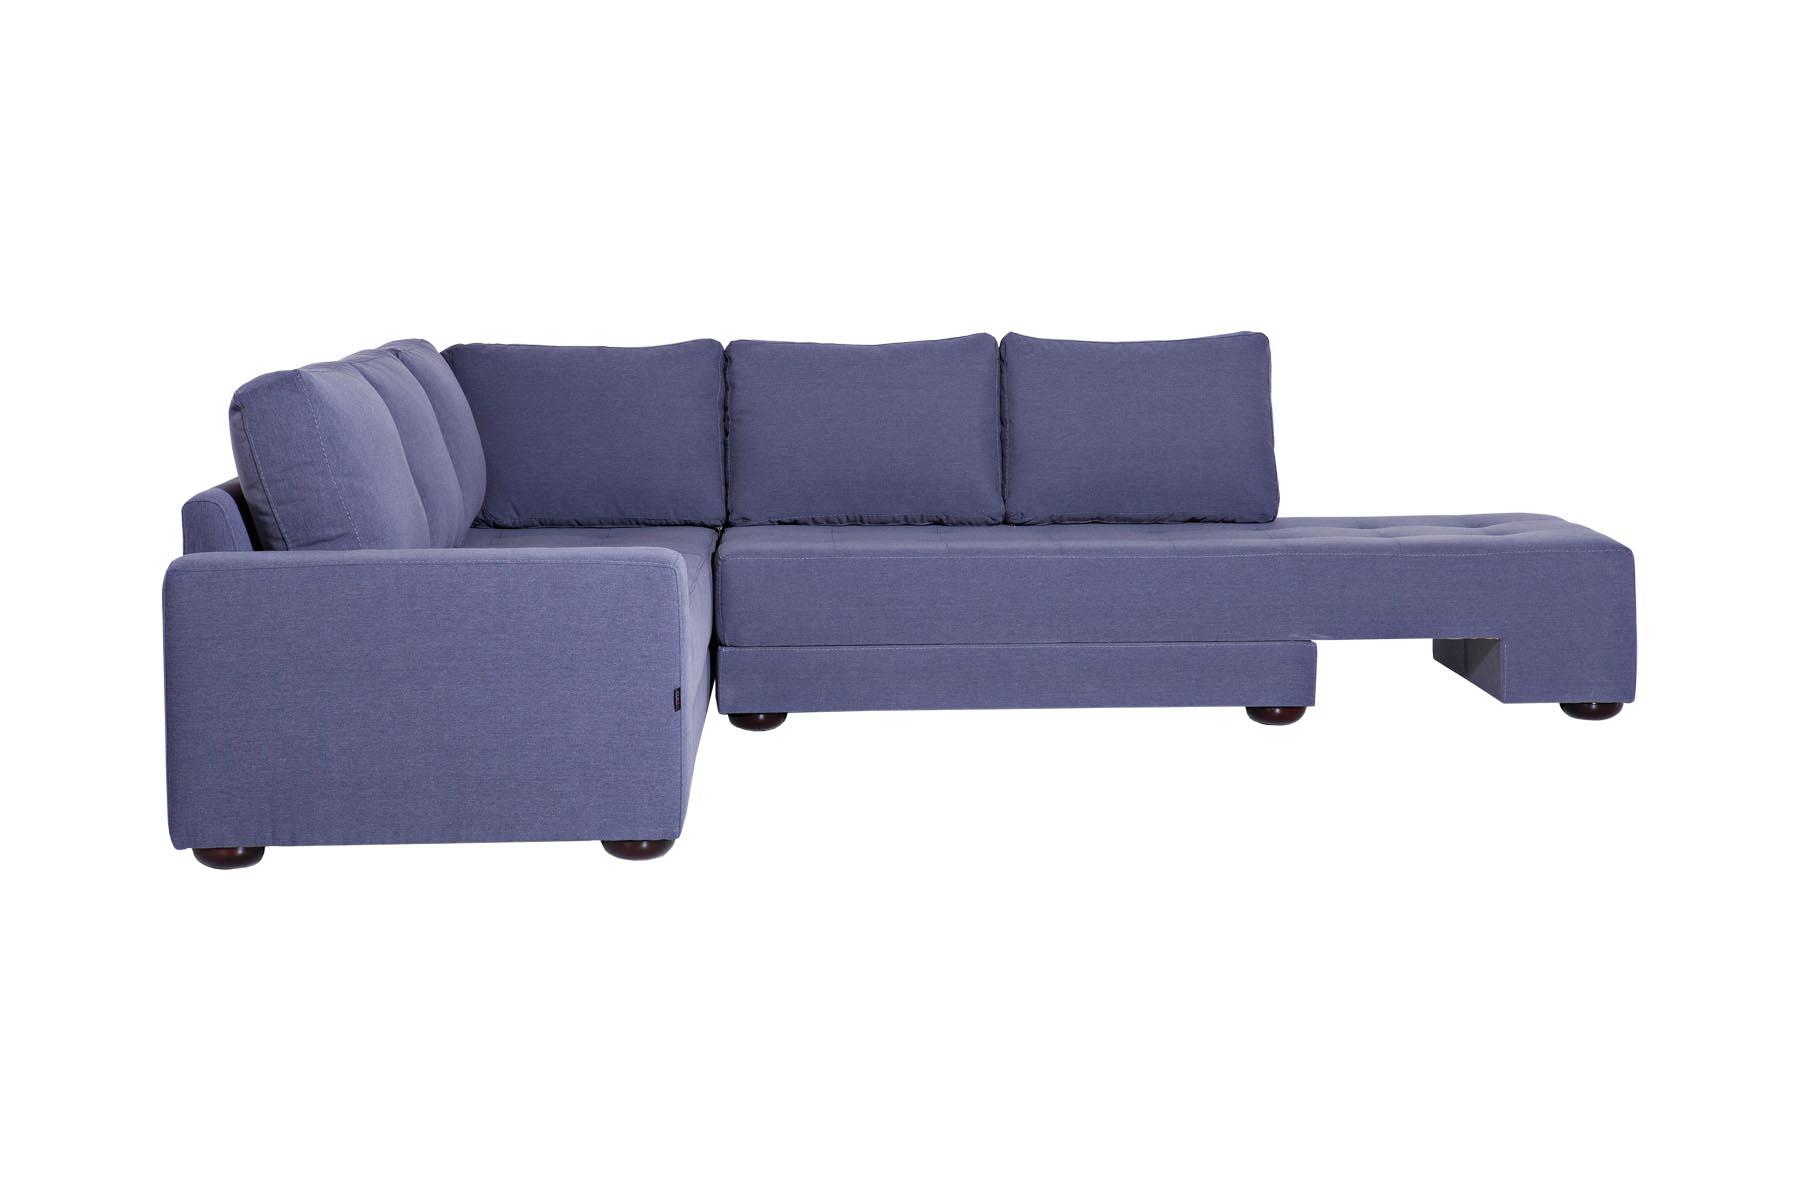 Sofa koja se uklapa u moderno opremljen enterijer. Posjeduje rotirajući mehanizam koji pretvara ovu ugaonu u ležaj standardnih dimenzija. Pored toga posjeduje i dva manja sanduka za odlaganje stvari.